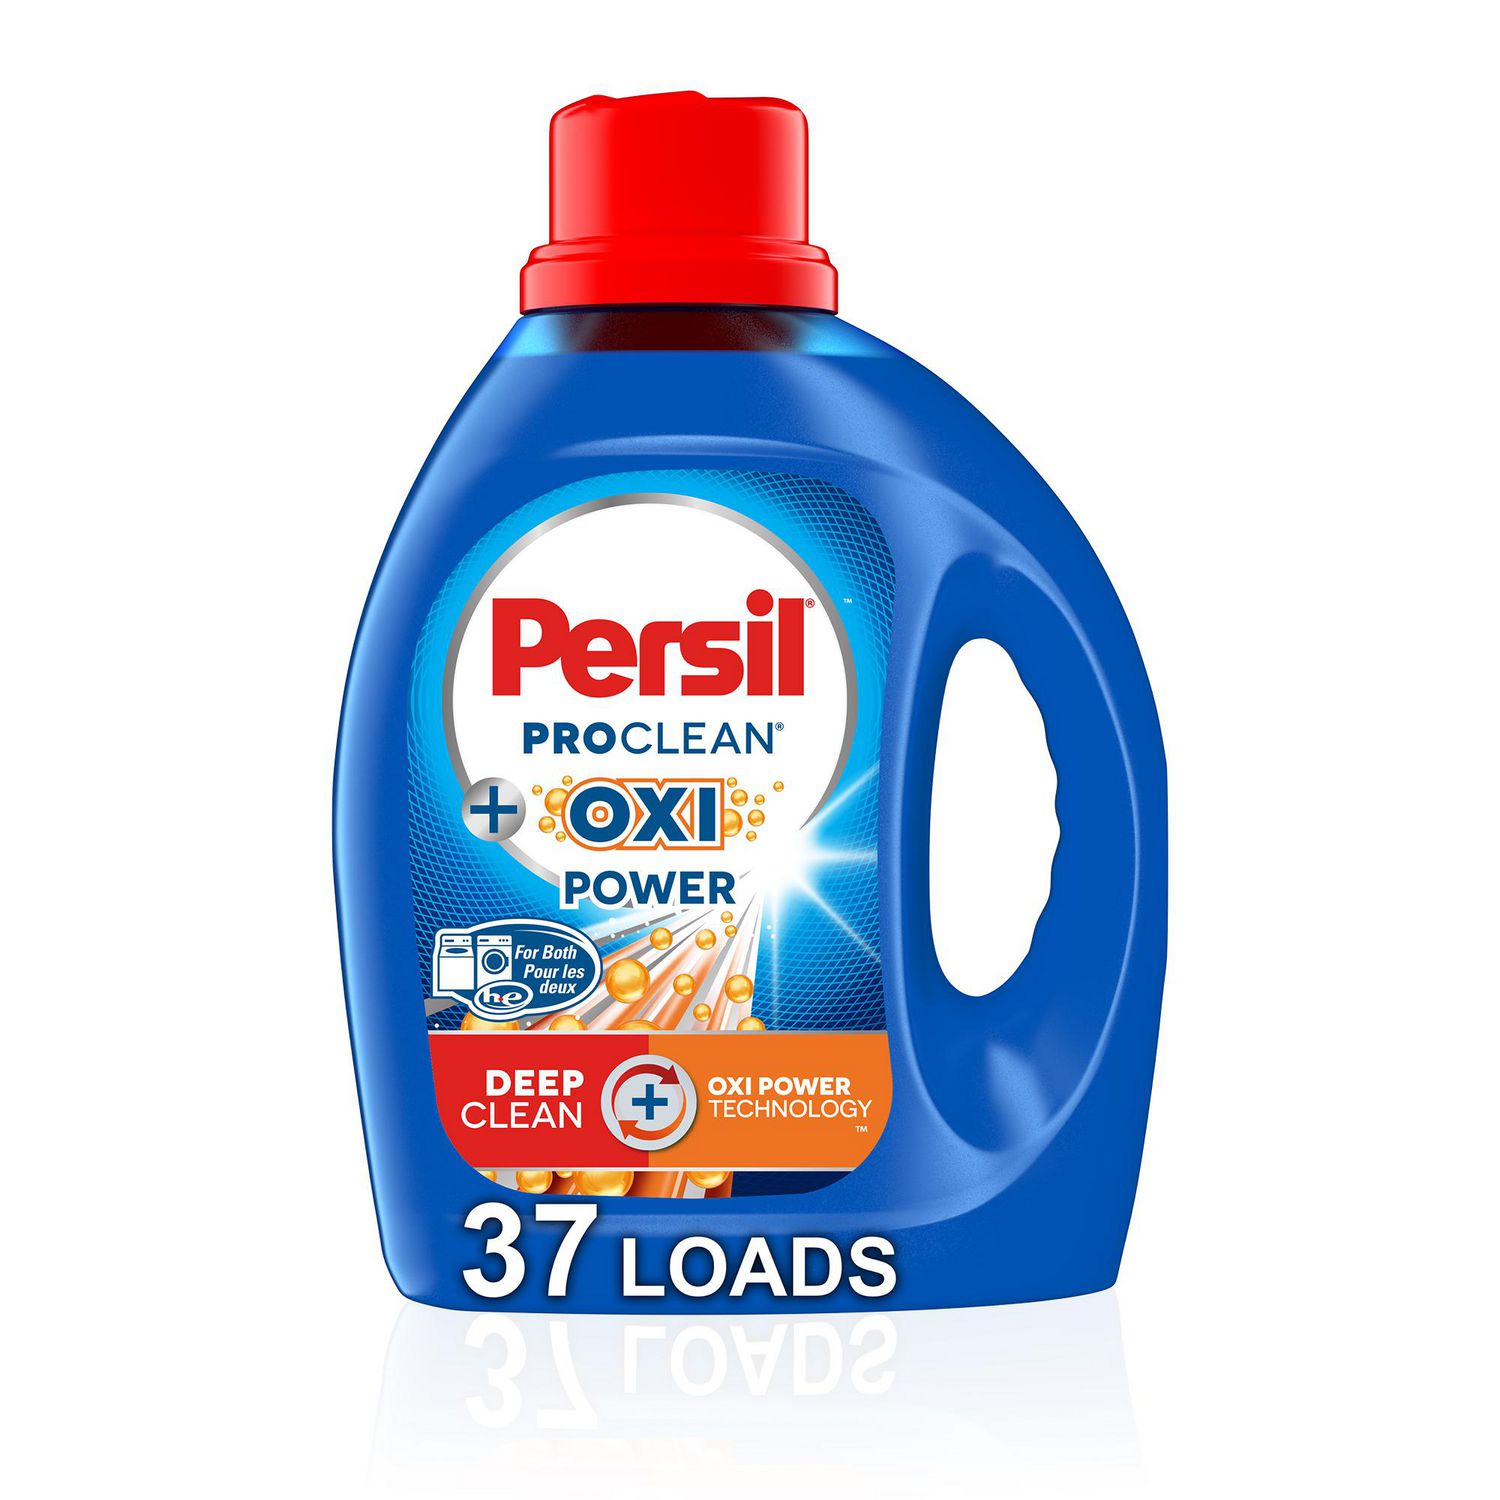 Détergent à lessive liquide Persil ProClean, formule améliorée Puissance  OXI (utilise de l'oxygène) 2,21 L 37 brassées 